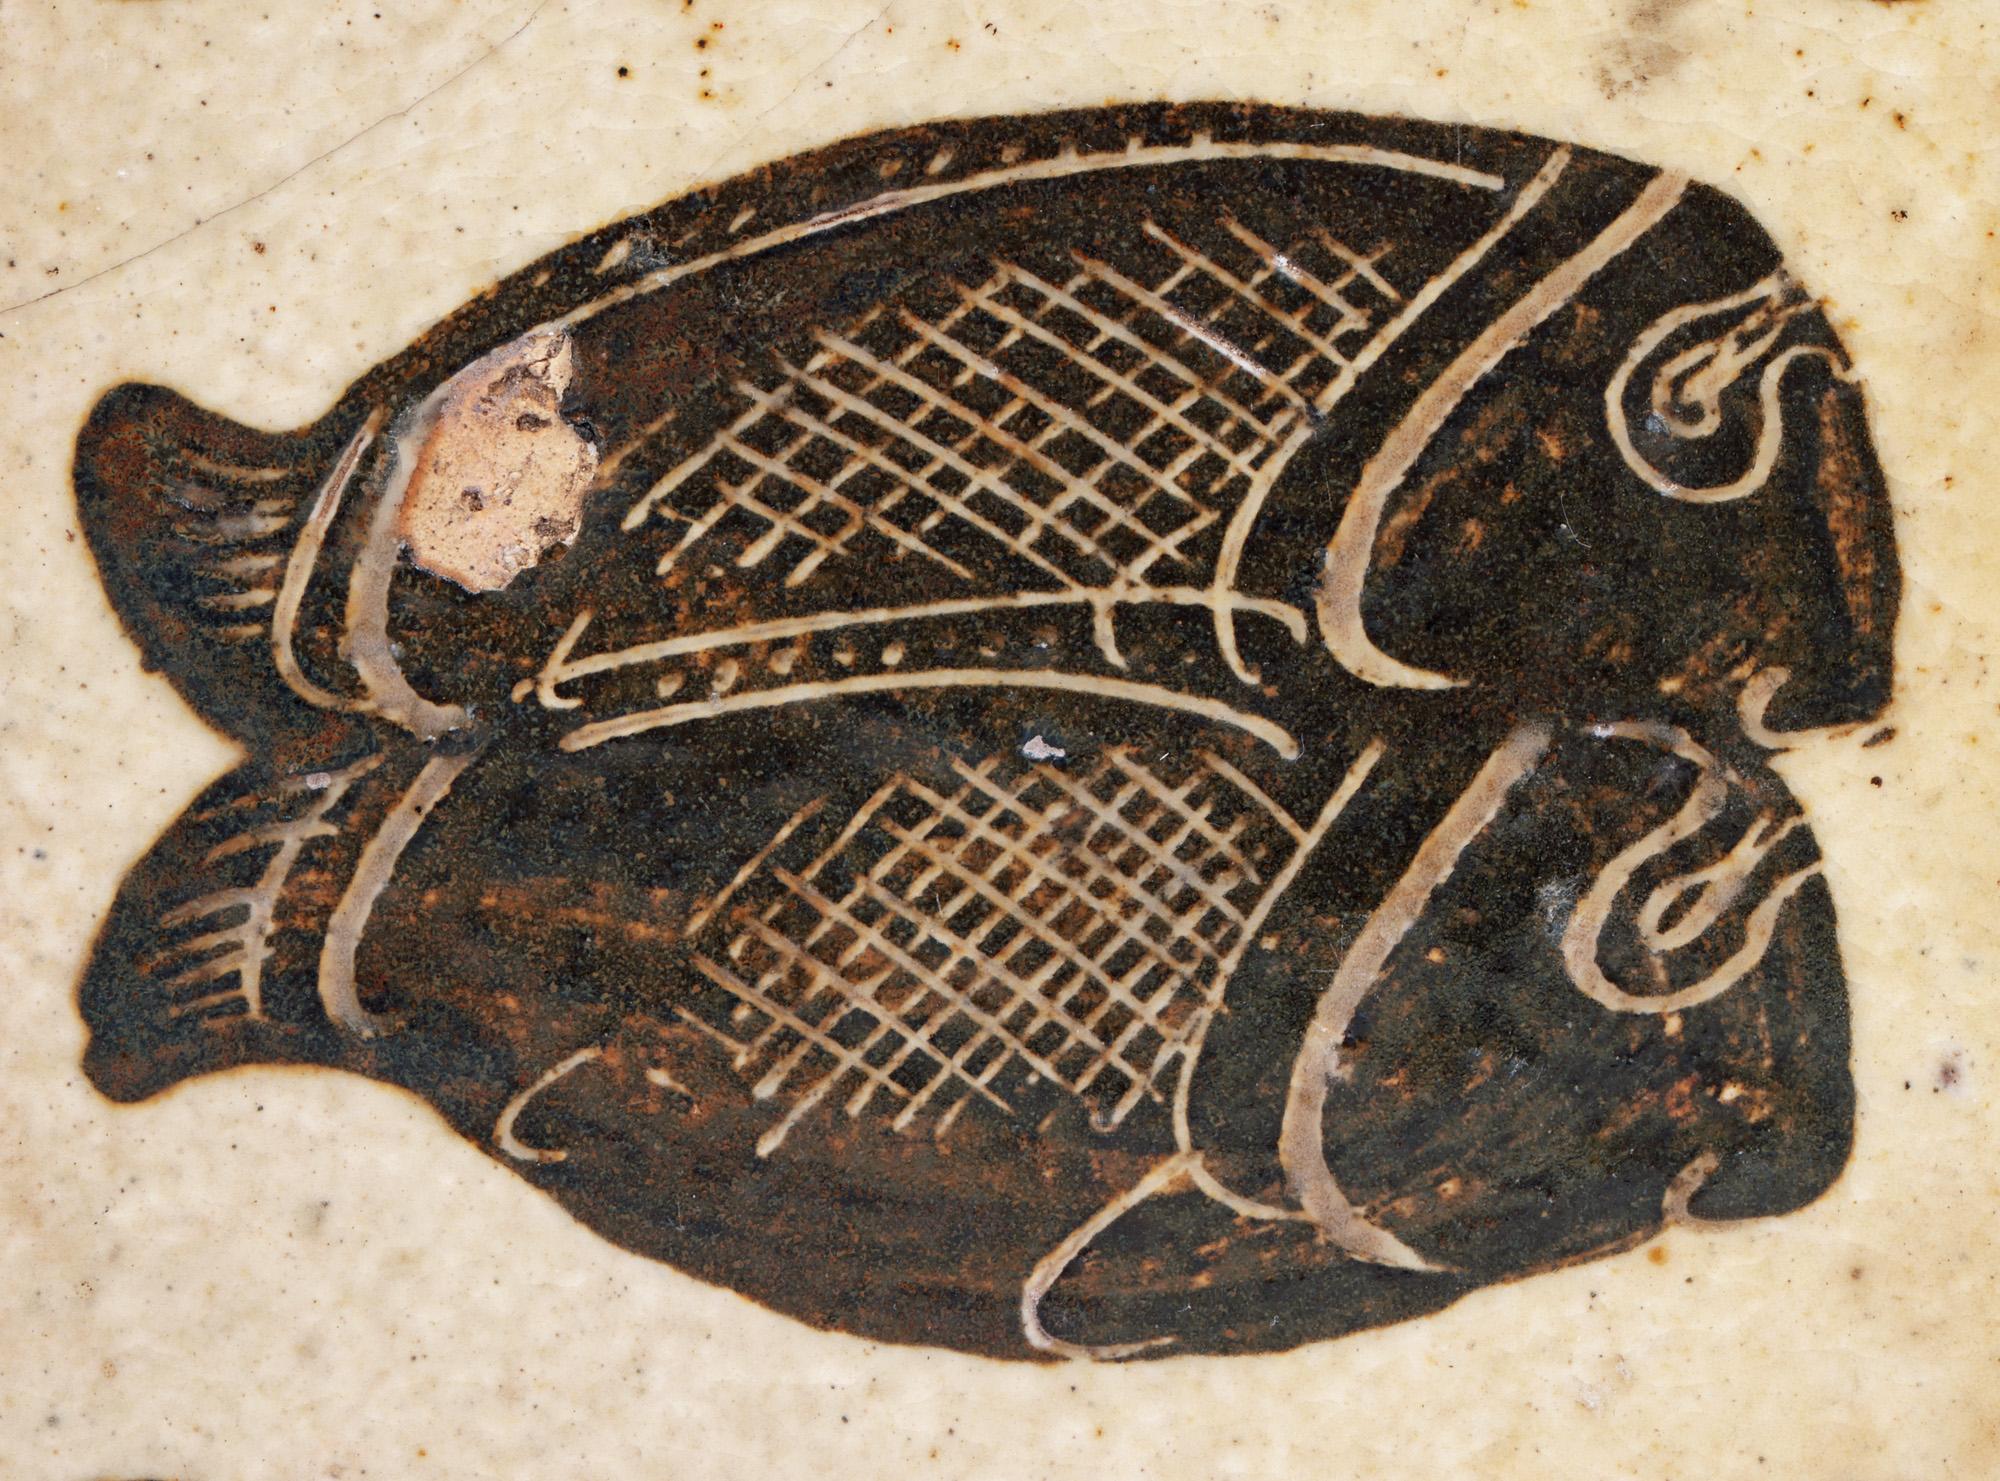 Un rare carreau de poterie d'atelier émaillé, fait à la main et décoré de deux poissons par le célèbre potier anglais Bernard Leach CBE (britannique, 1887-1979), fabriqué à la Leach Pottery à St Ives, en Cornouailles, et daté de 1933. Le carreau de